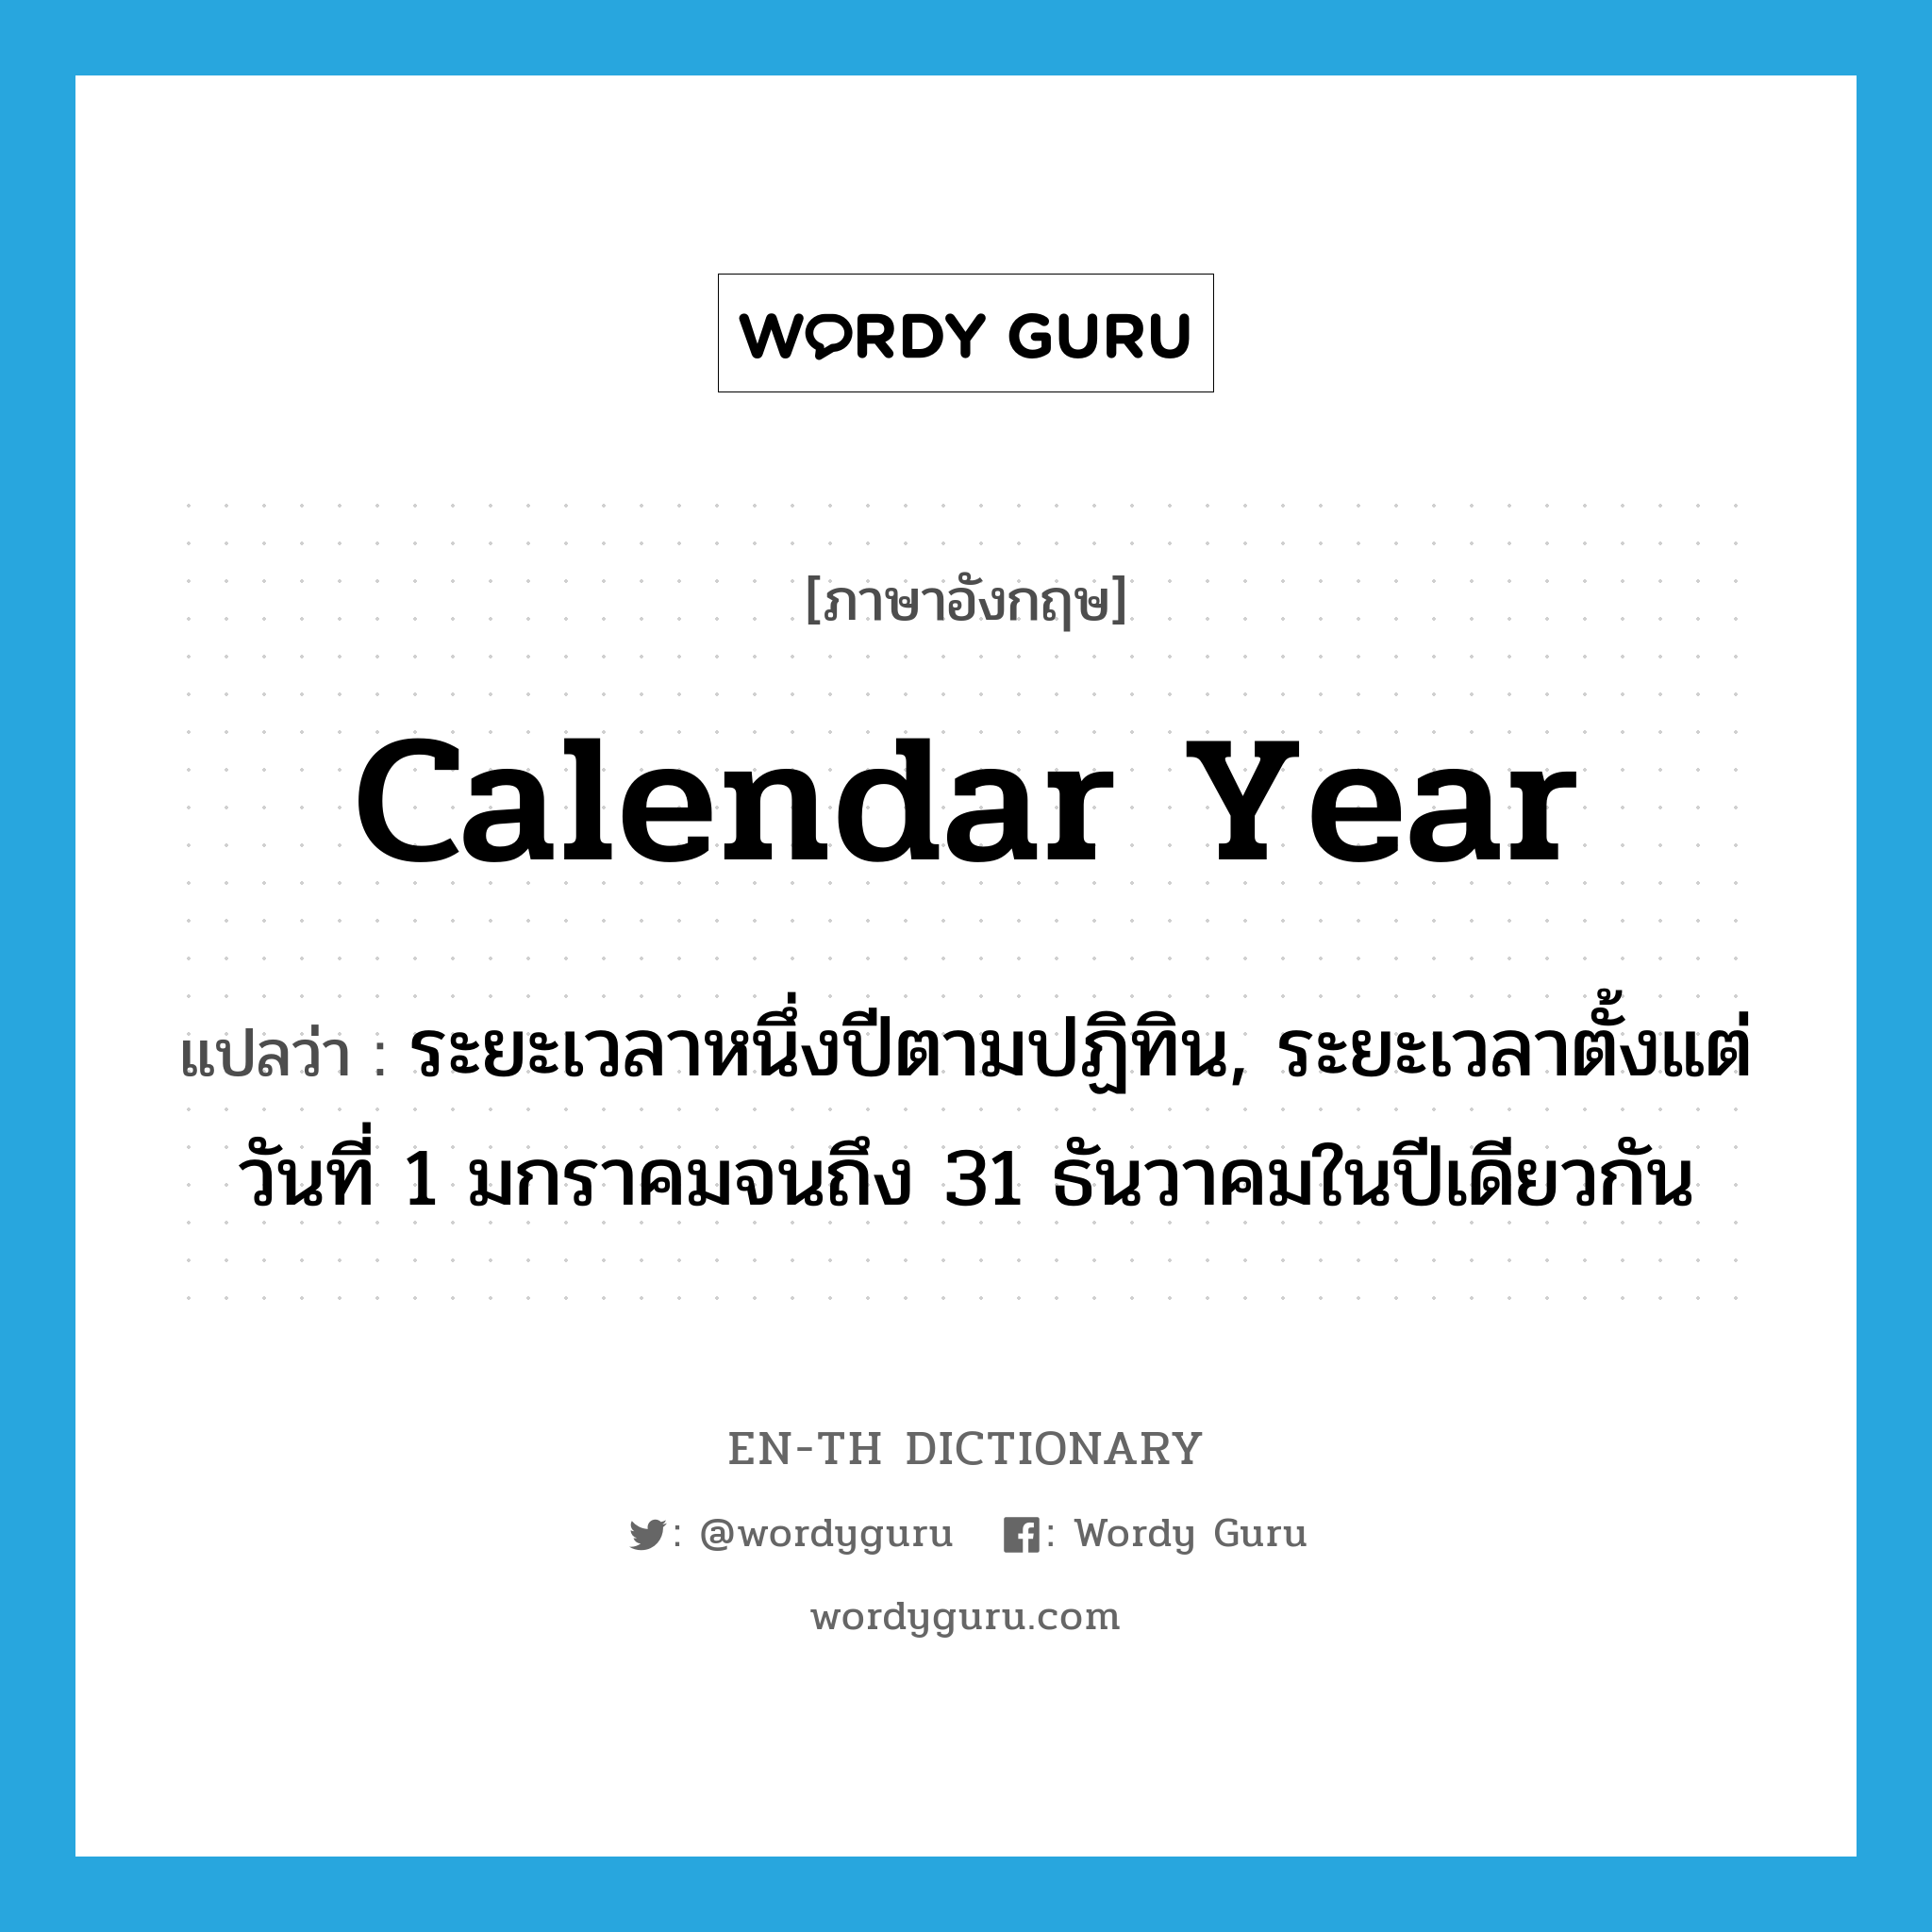 calendar year แปลว่า?, คำศัพท์ภาษาอังกฤษ calendar year แปลว่า ระยะเวลาหนึ่งปีตามปฏิทิน, ระยะเวลาตั้งแต่วันที่ 1 มกราคมจนถึง 31 ธันวาคมในปีเดียวกัน ประเภท N หมวด N